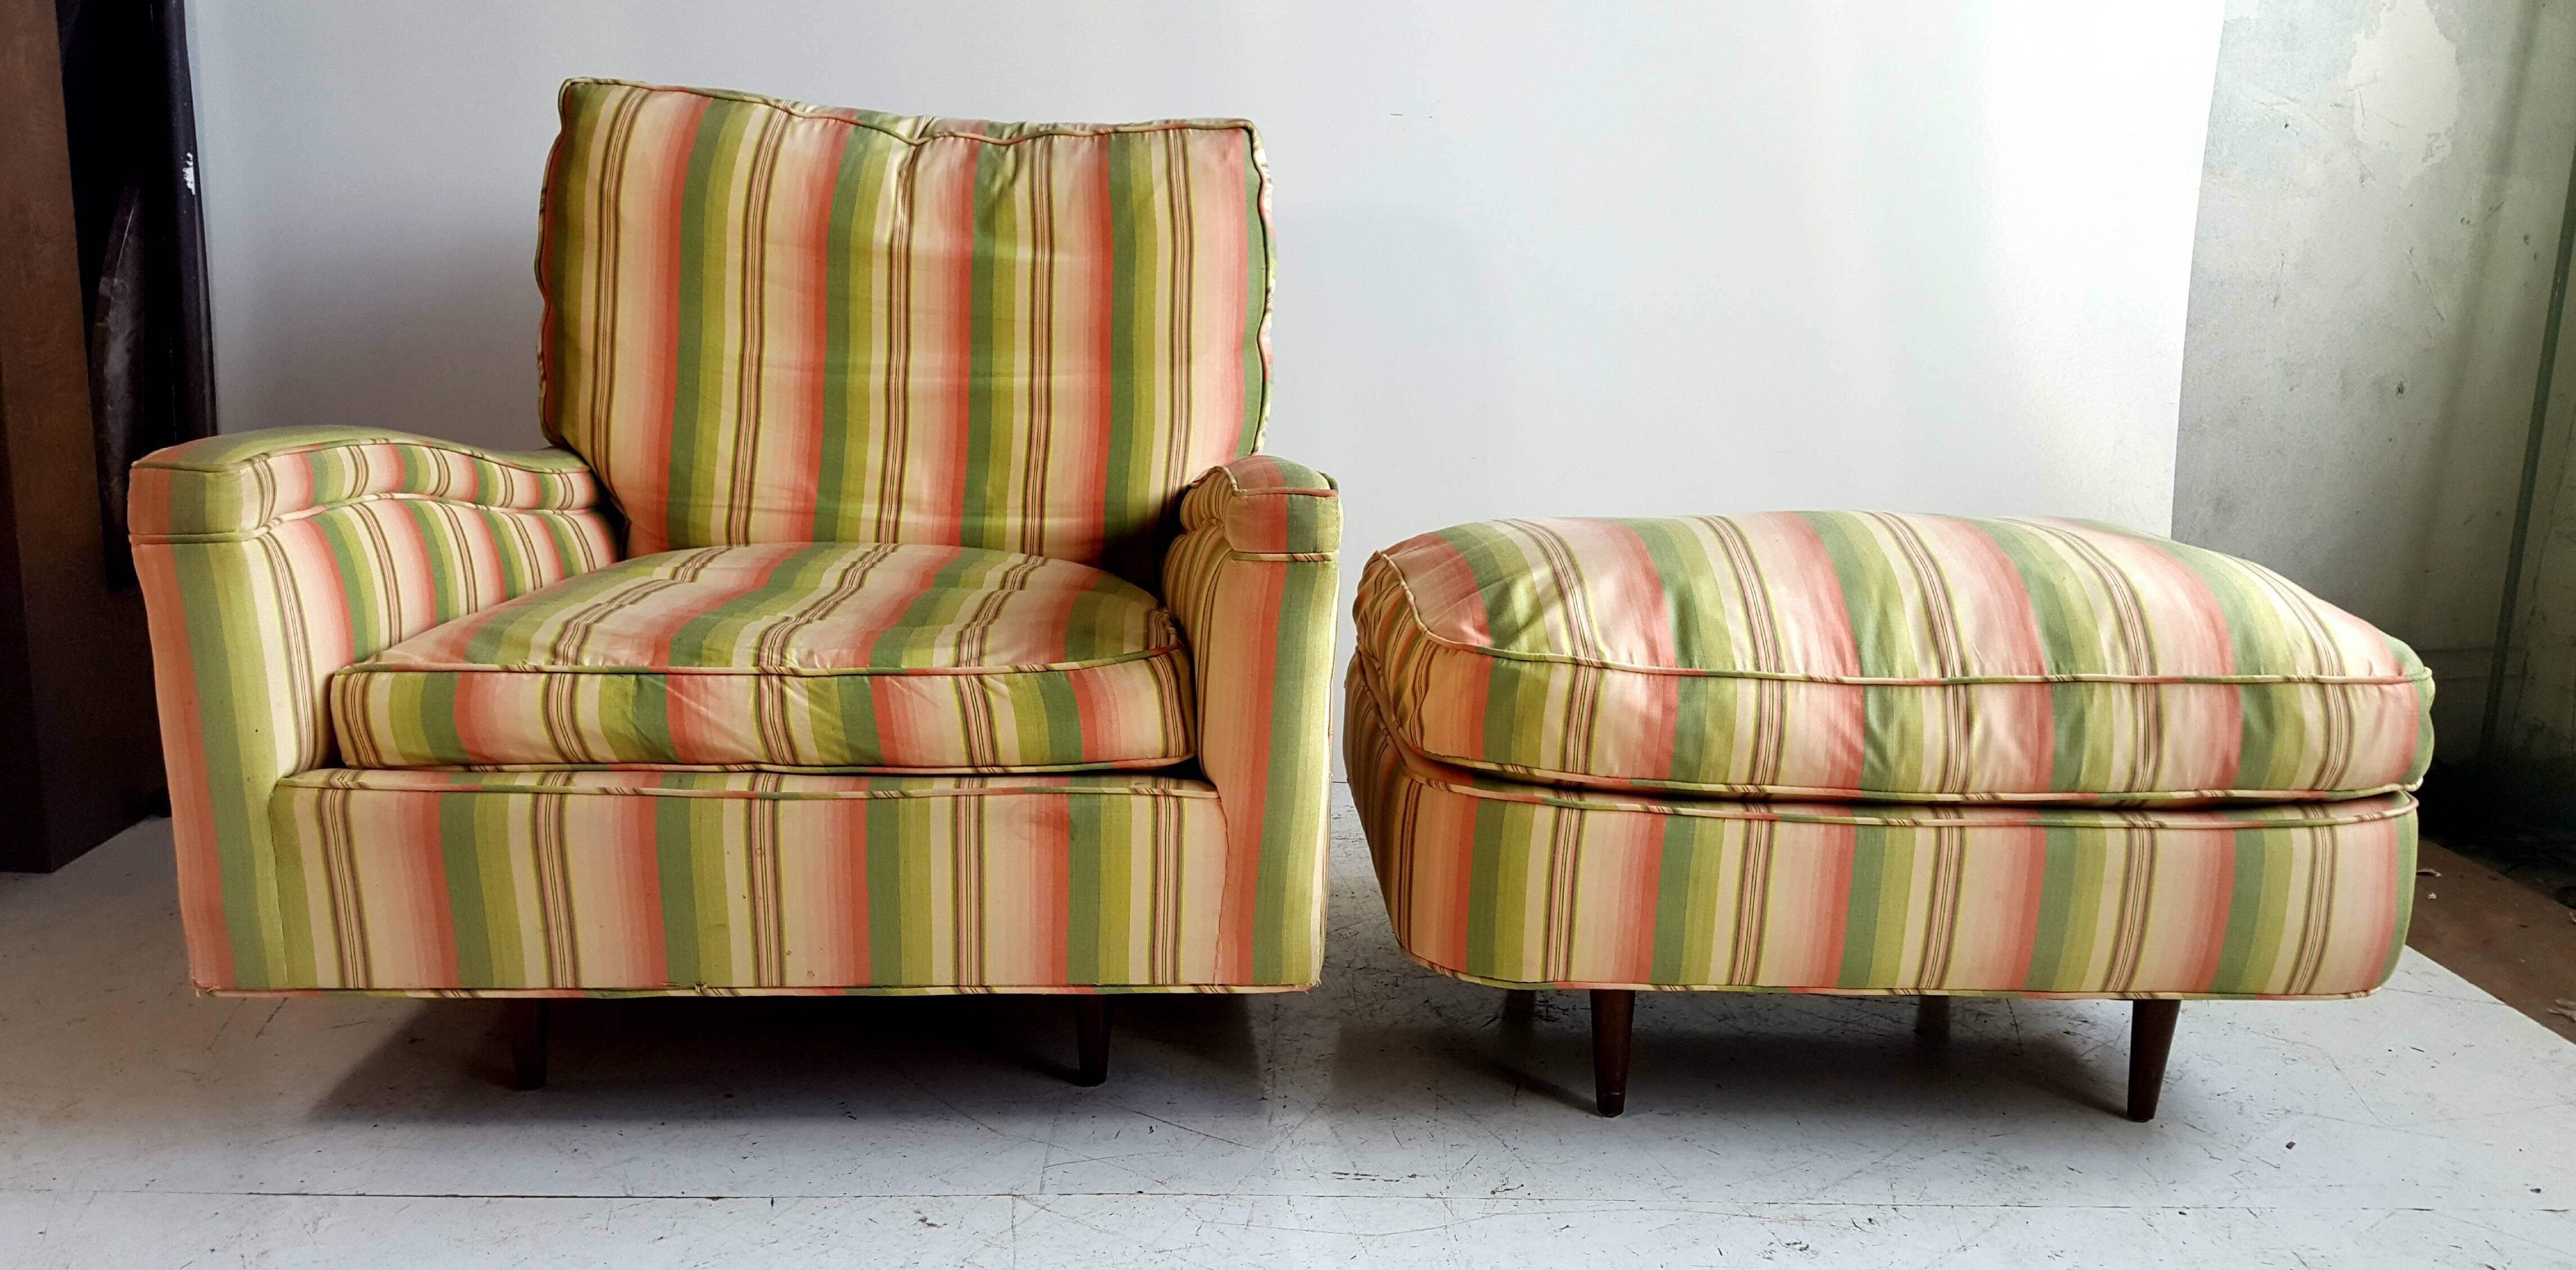 Übergroßer, länglicher Art Deco Sessel und Ottomane im Stromlinien-Design. Äußerst komfortabel, daunengefüllt, gute Qualität und Konstruktion. Stuhl und Ottomane scheinen zu schweben, da die Beine eingefügt sind, umwerfend. Ottomane misst 2' x 3' x